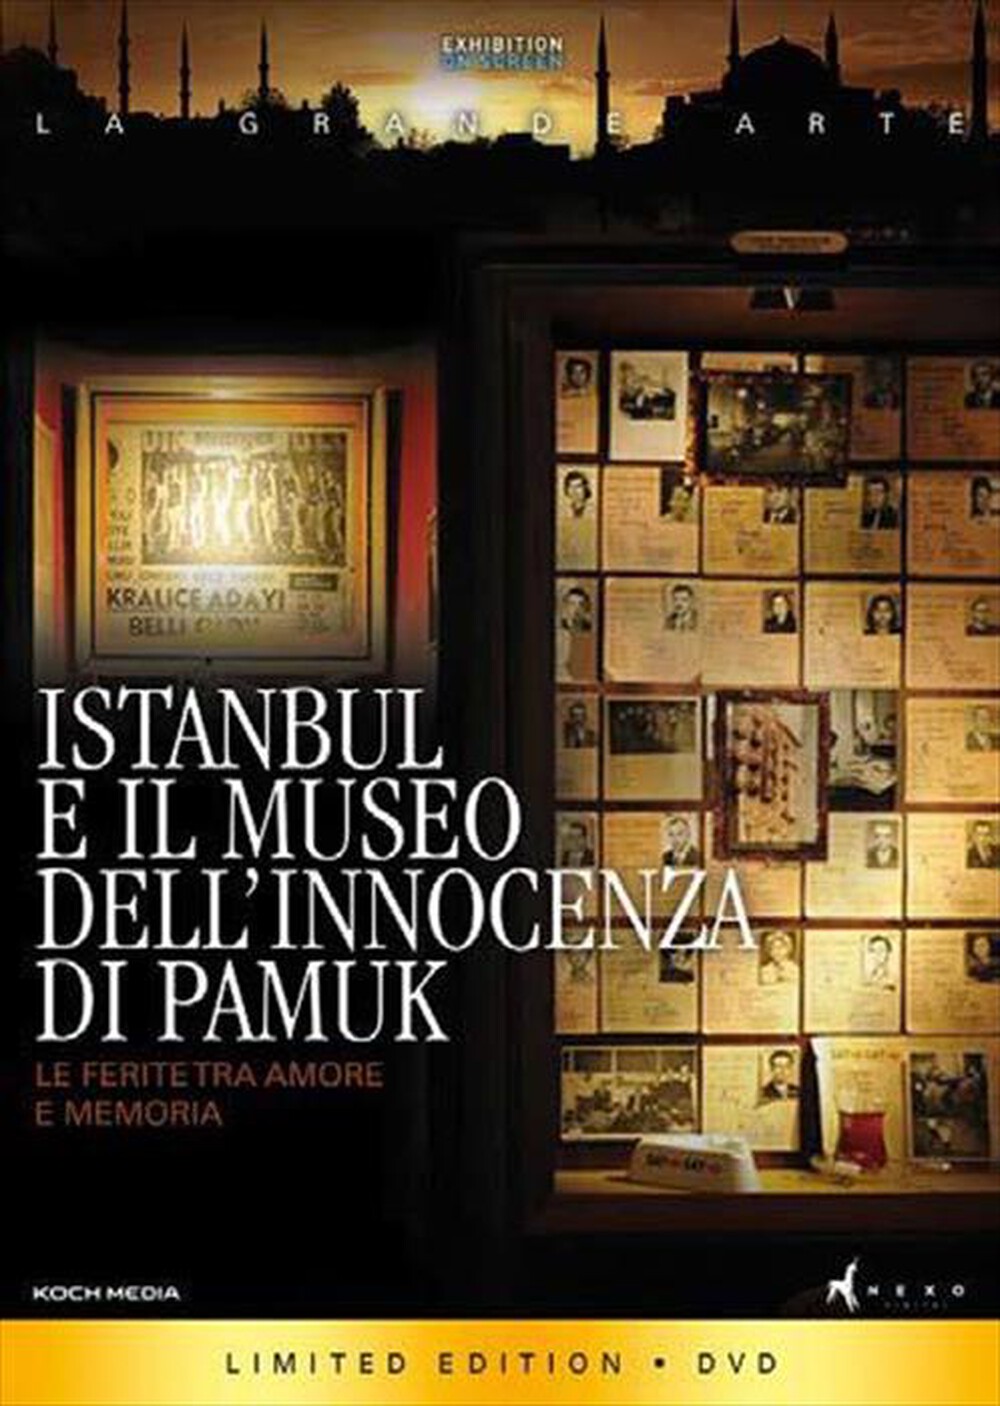 "KOCH MEDIA - Istanbul E Il Museo Dell'Innocenza Di Pamuk"